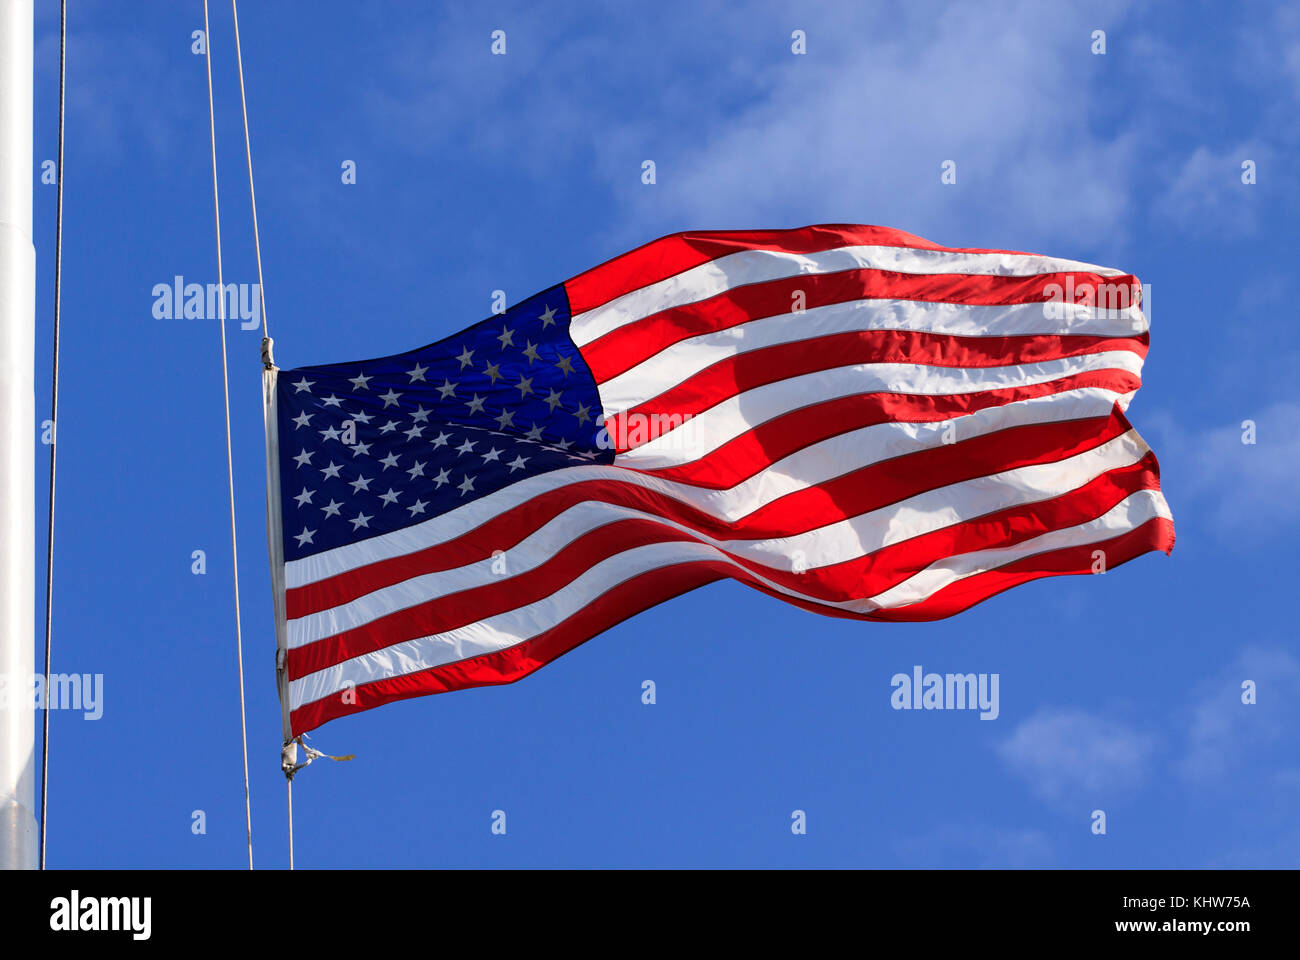 Un drapeau américain, les étoiles et les bandes, illuminé et soufflant plein dans le vent d'un mât ou mât de drapeau Banque D'Images